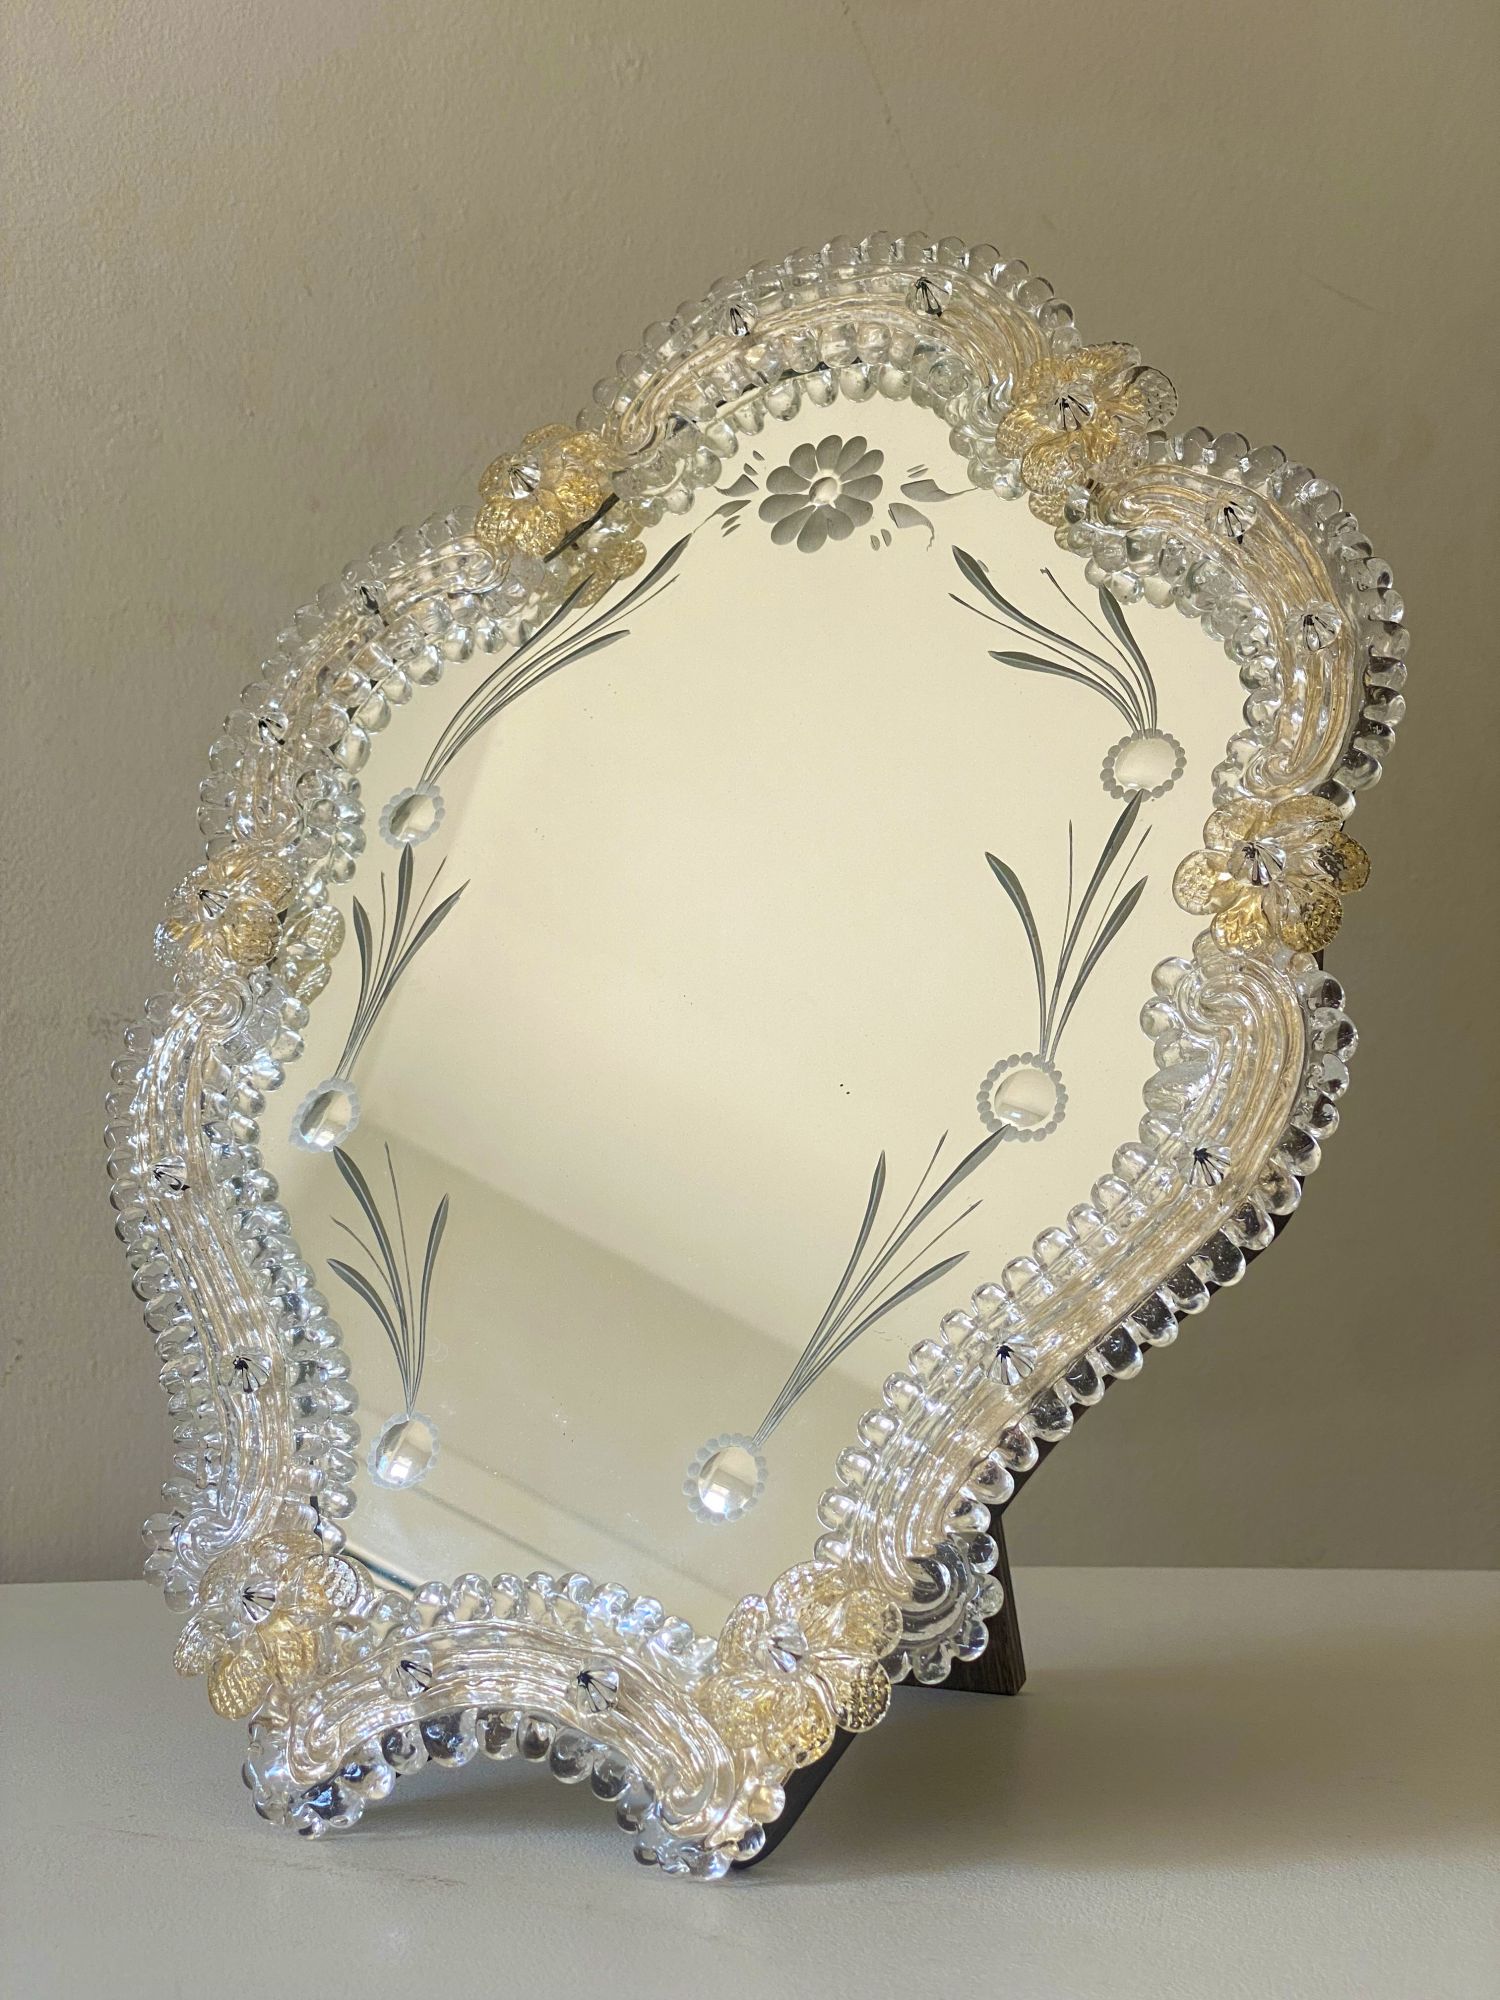 Transparent and gold Murano glass mirror frame with flowers and hand  engraved..rare artigian italian handmade